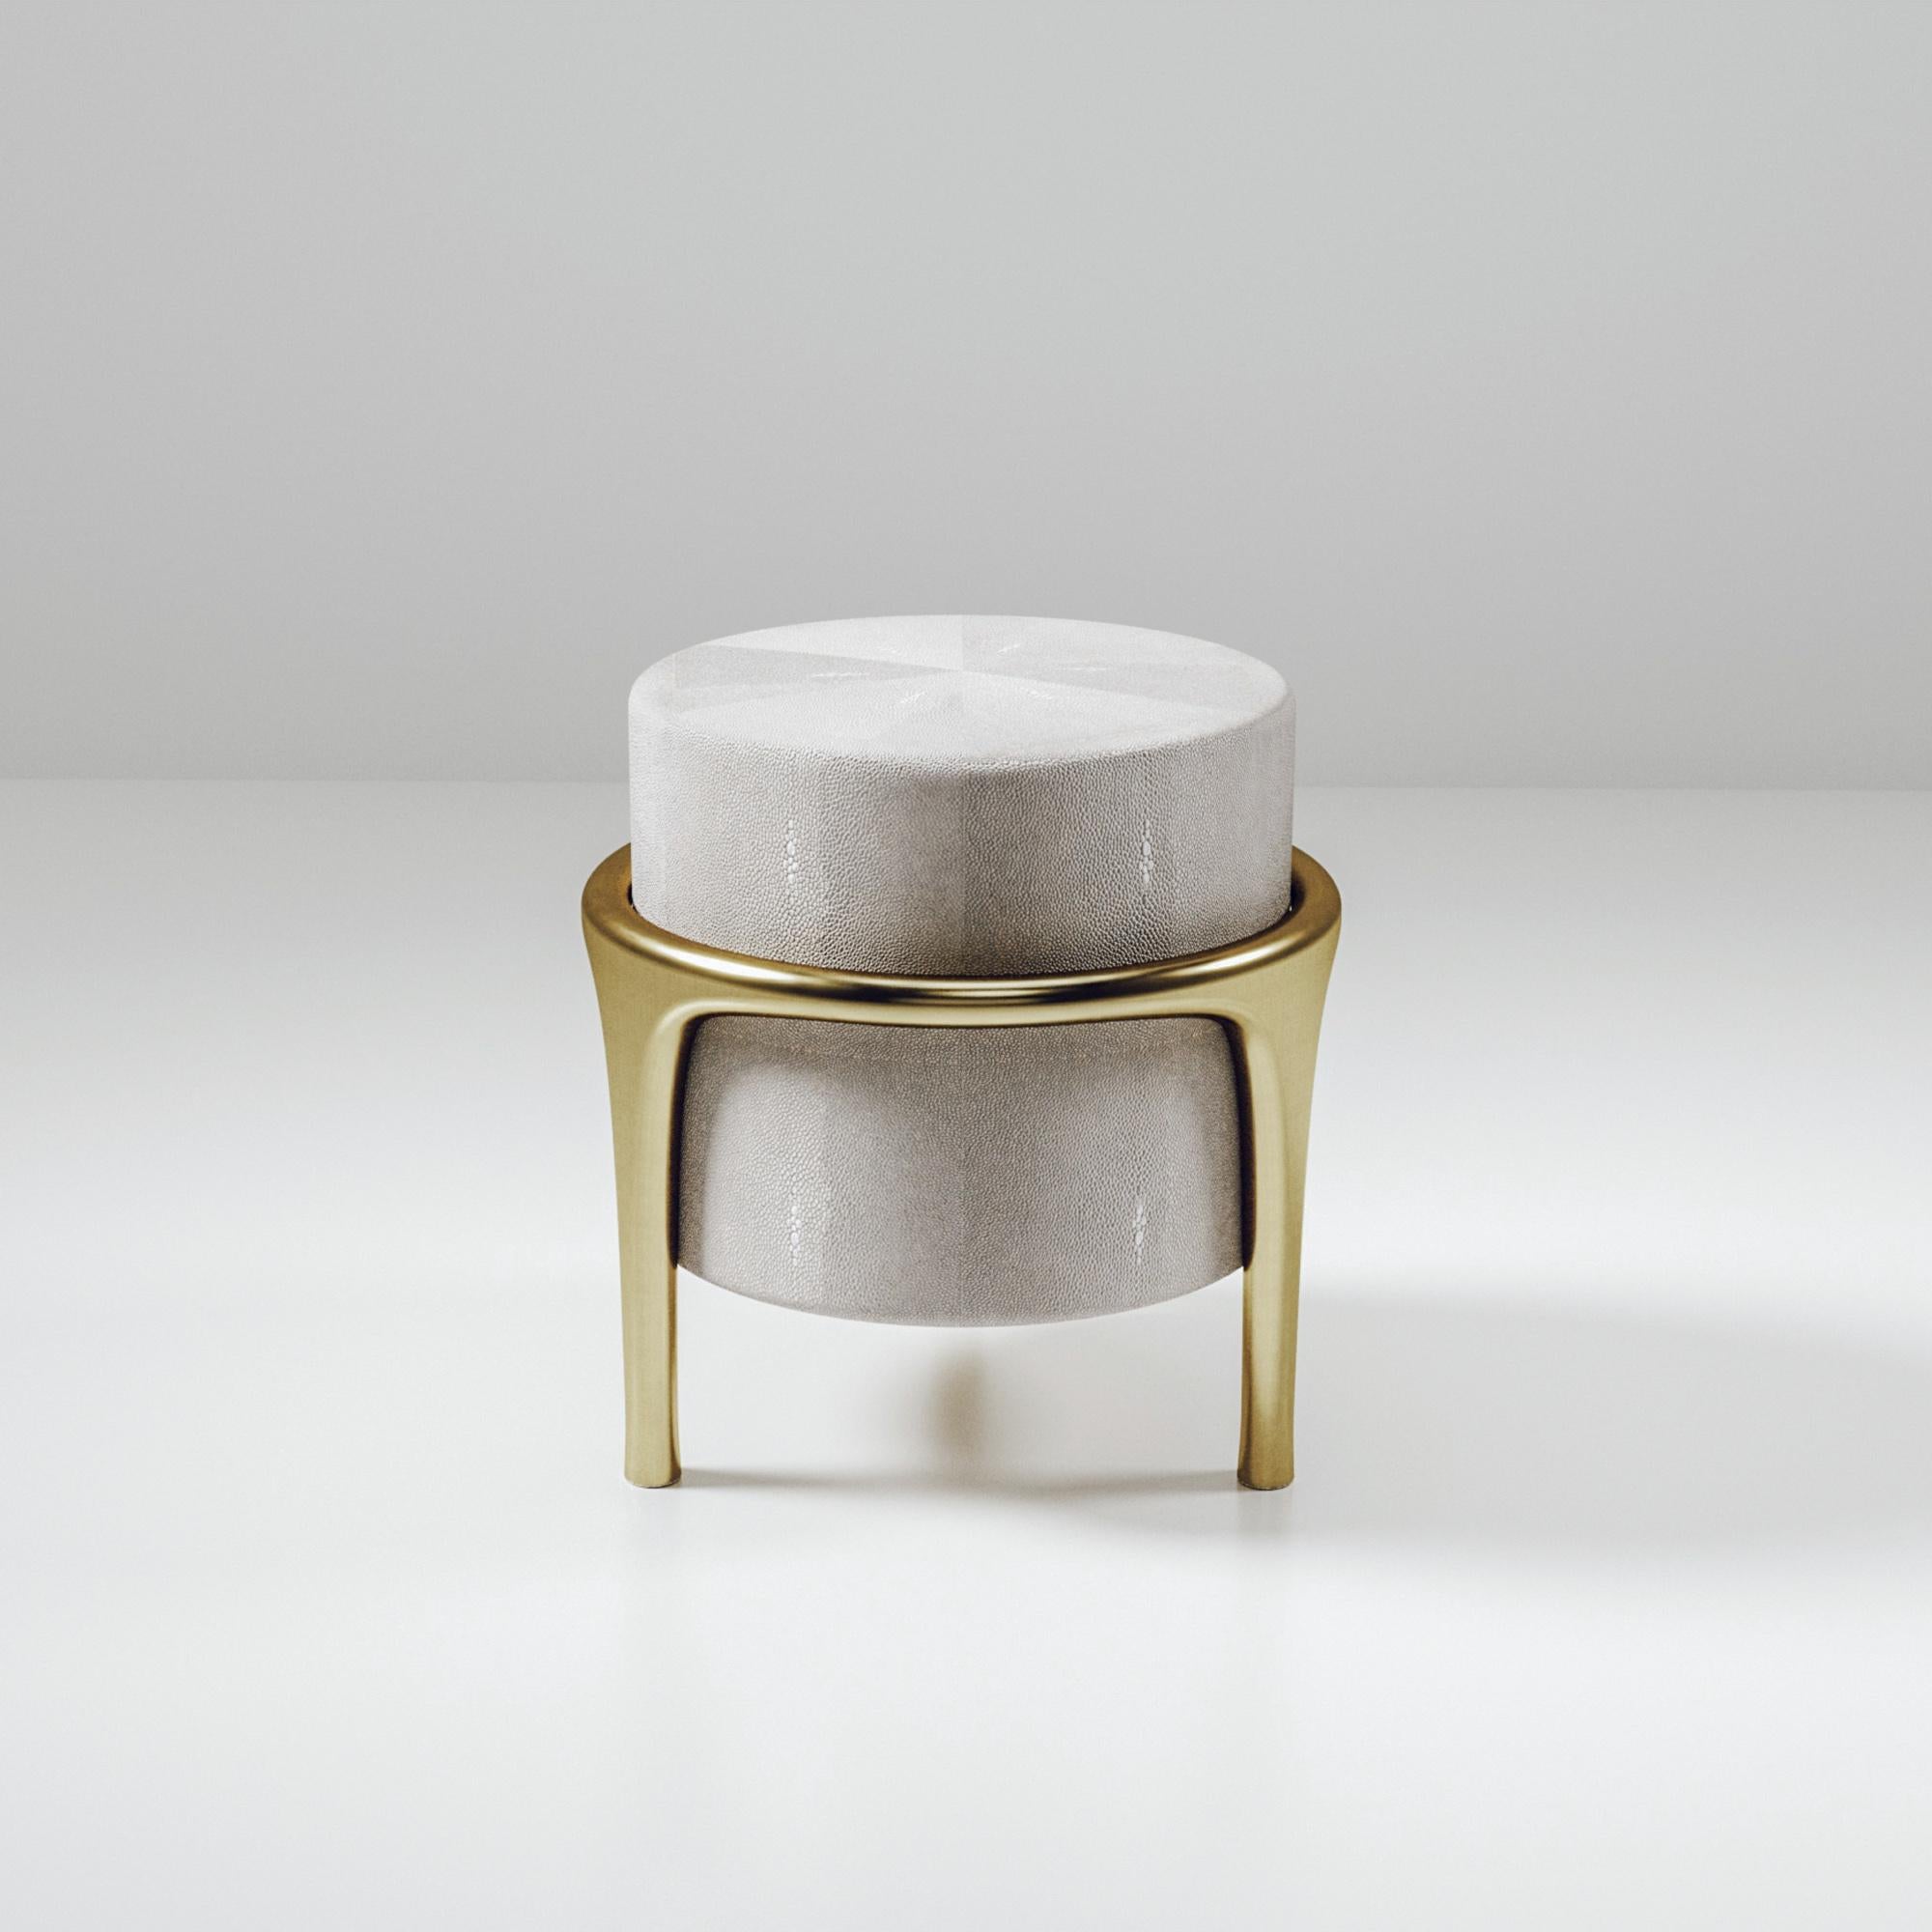 Der Ramo Hocker von R & Y Augousti ist ein elegantes und vielseitiges Möbelstück. Die cremefarbene Chagrin-Intarsie bietet Komfort, während die einzigartige Ästhetik des Gestells und der Details aus Messing in Bronze-Patina erhalten bleibt. Diese